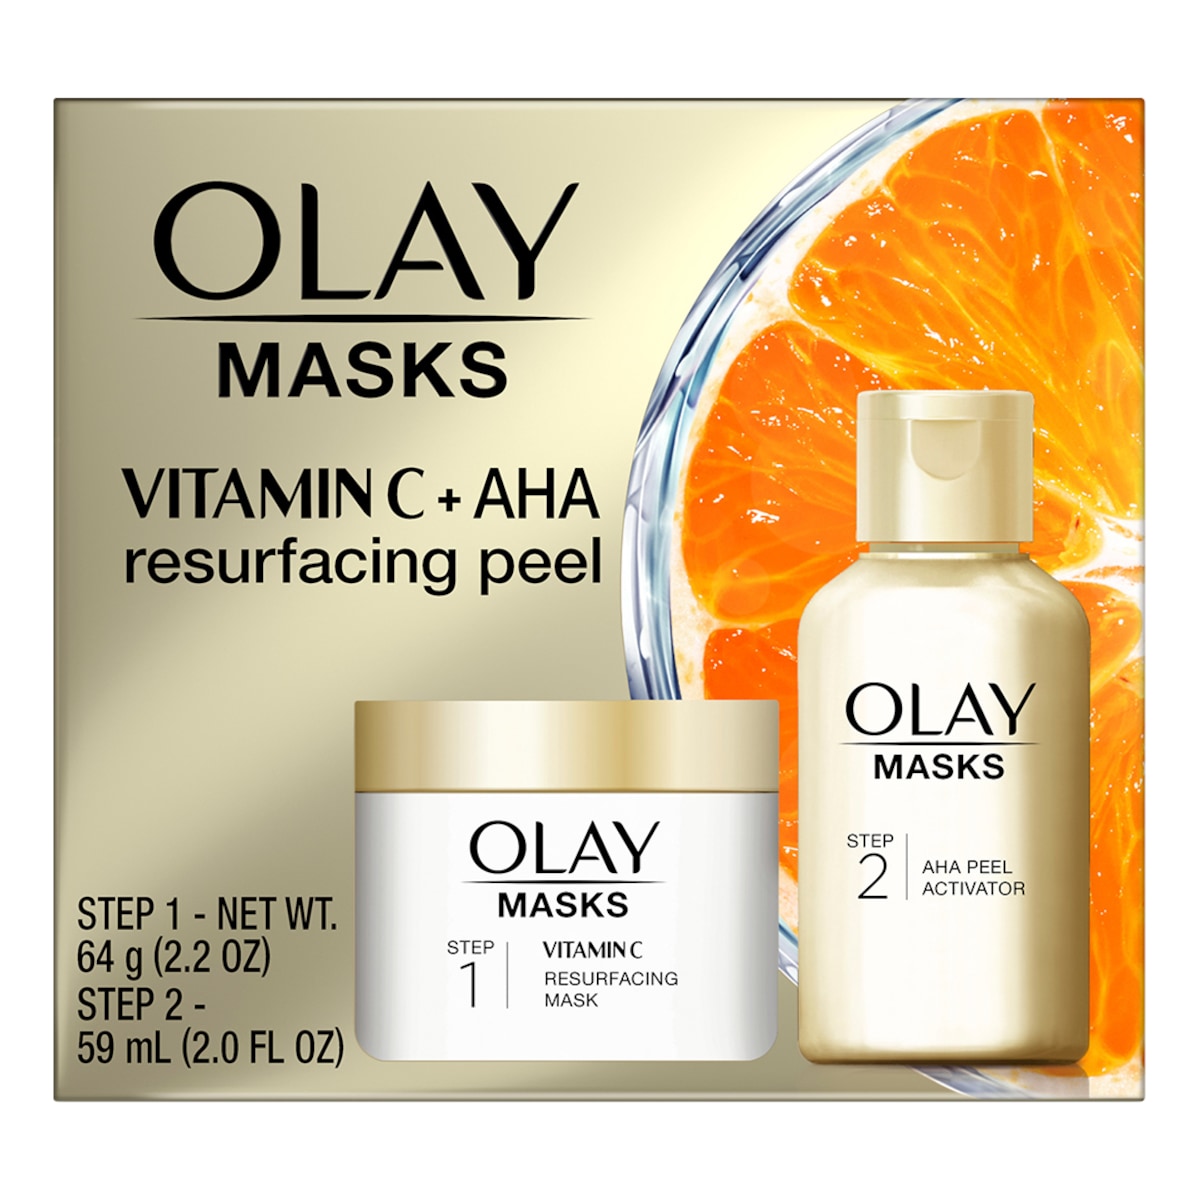 Olay Vitamin C Resurfacing Mask 64g + AHA Peel Activator 59ml